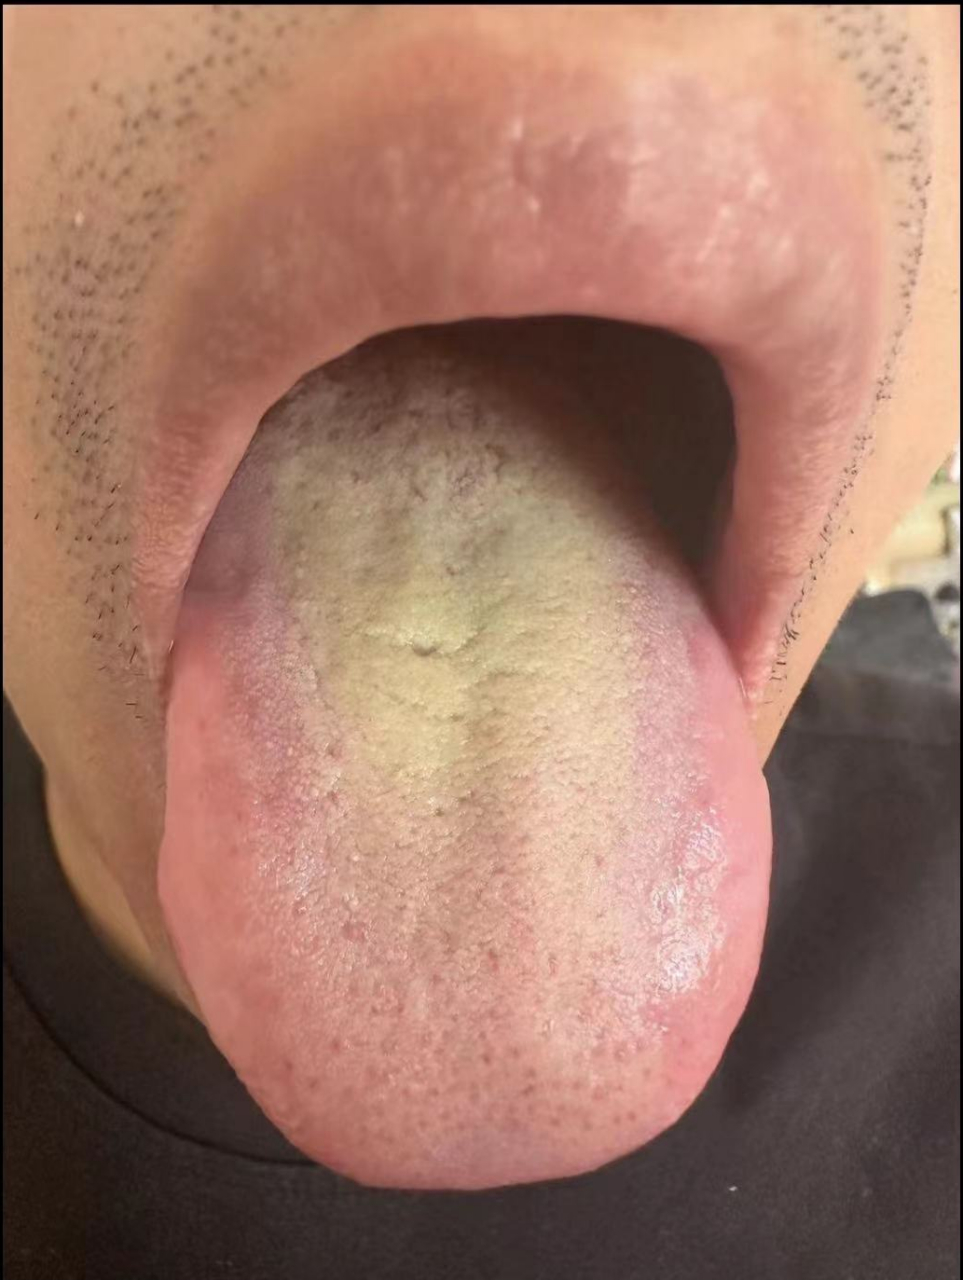 血瘀舌头图片 肠胃图片